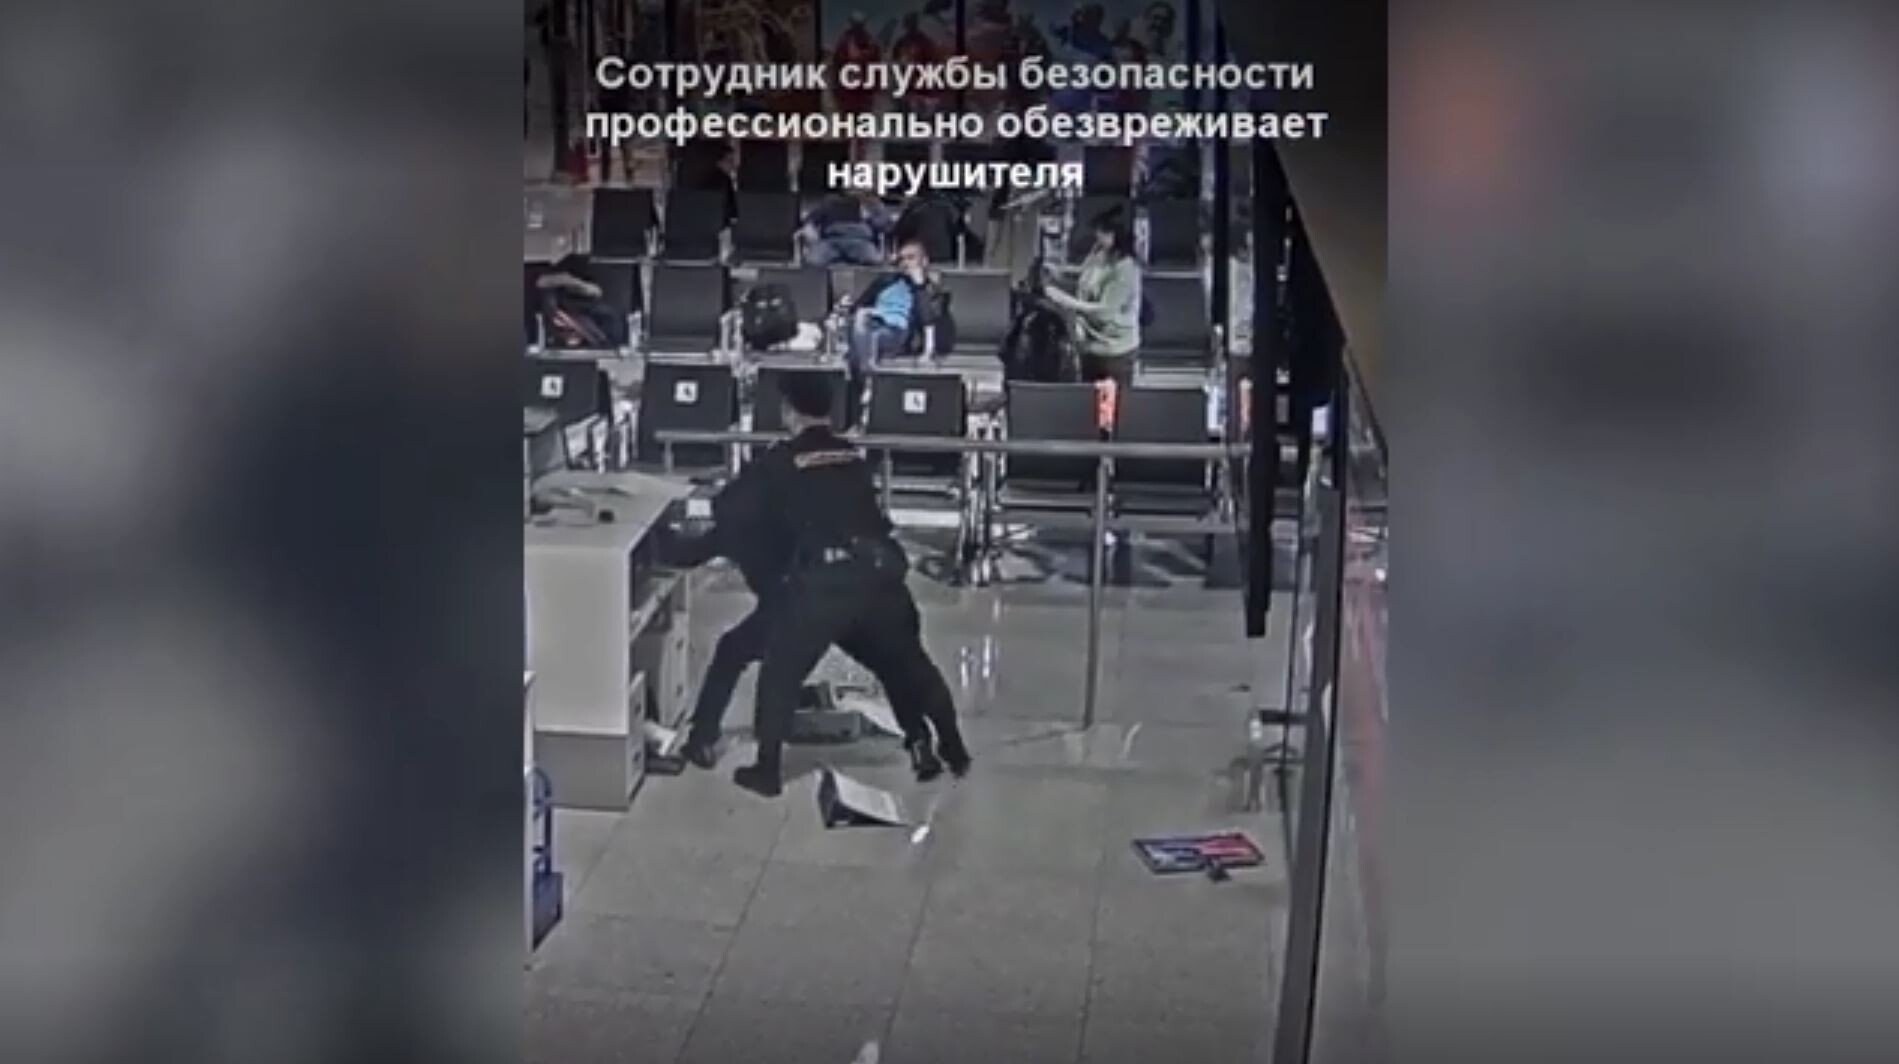 مسافر غاضب يدمر ممتلكات مطار شيريميتييفو بضواحي موسكو (فيديو)